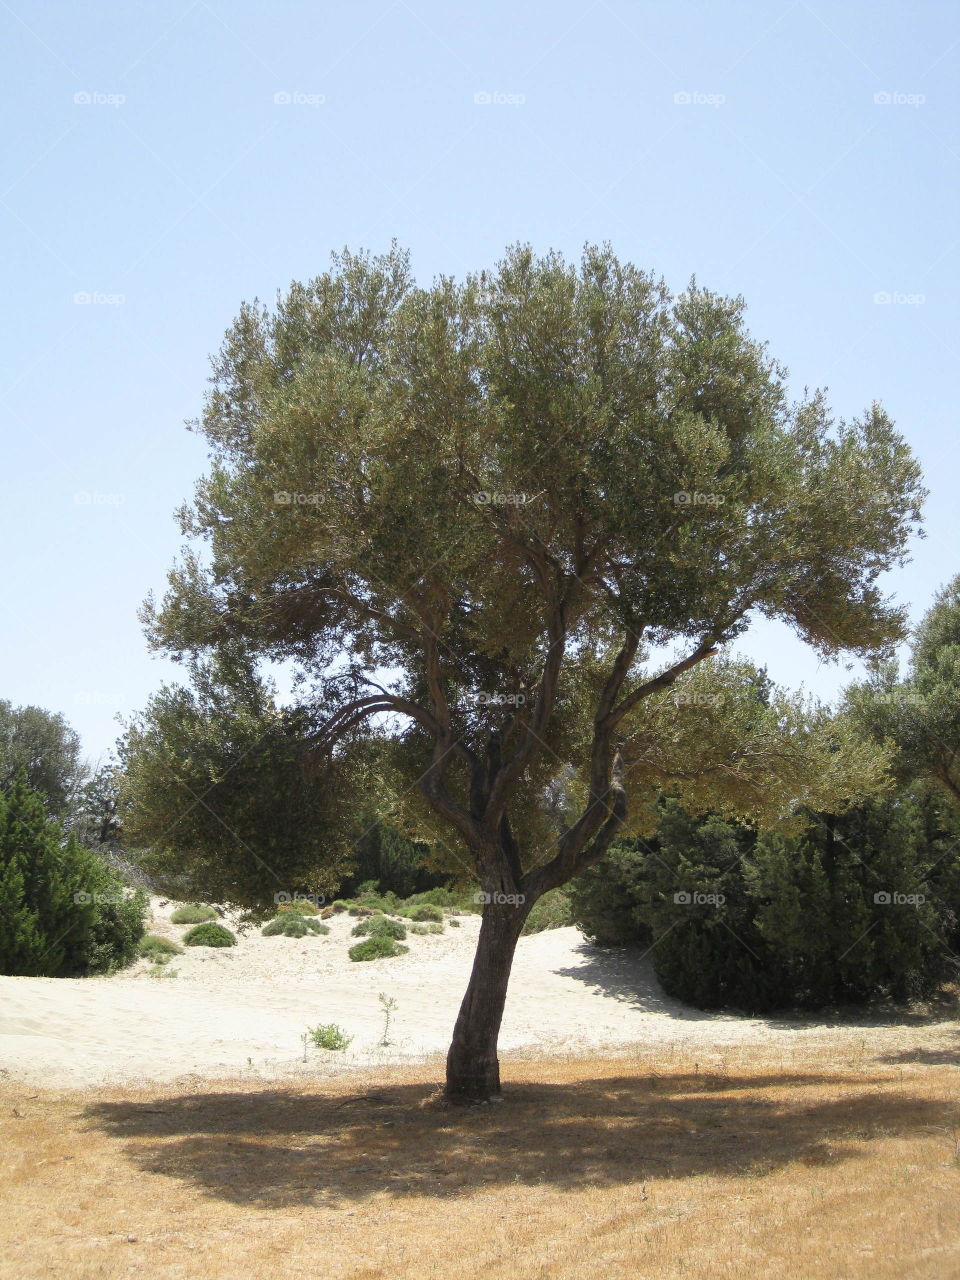 Greek trees